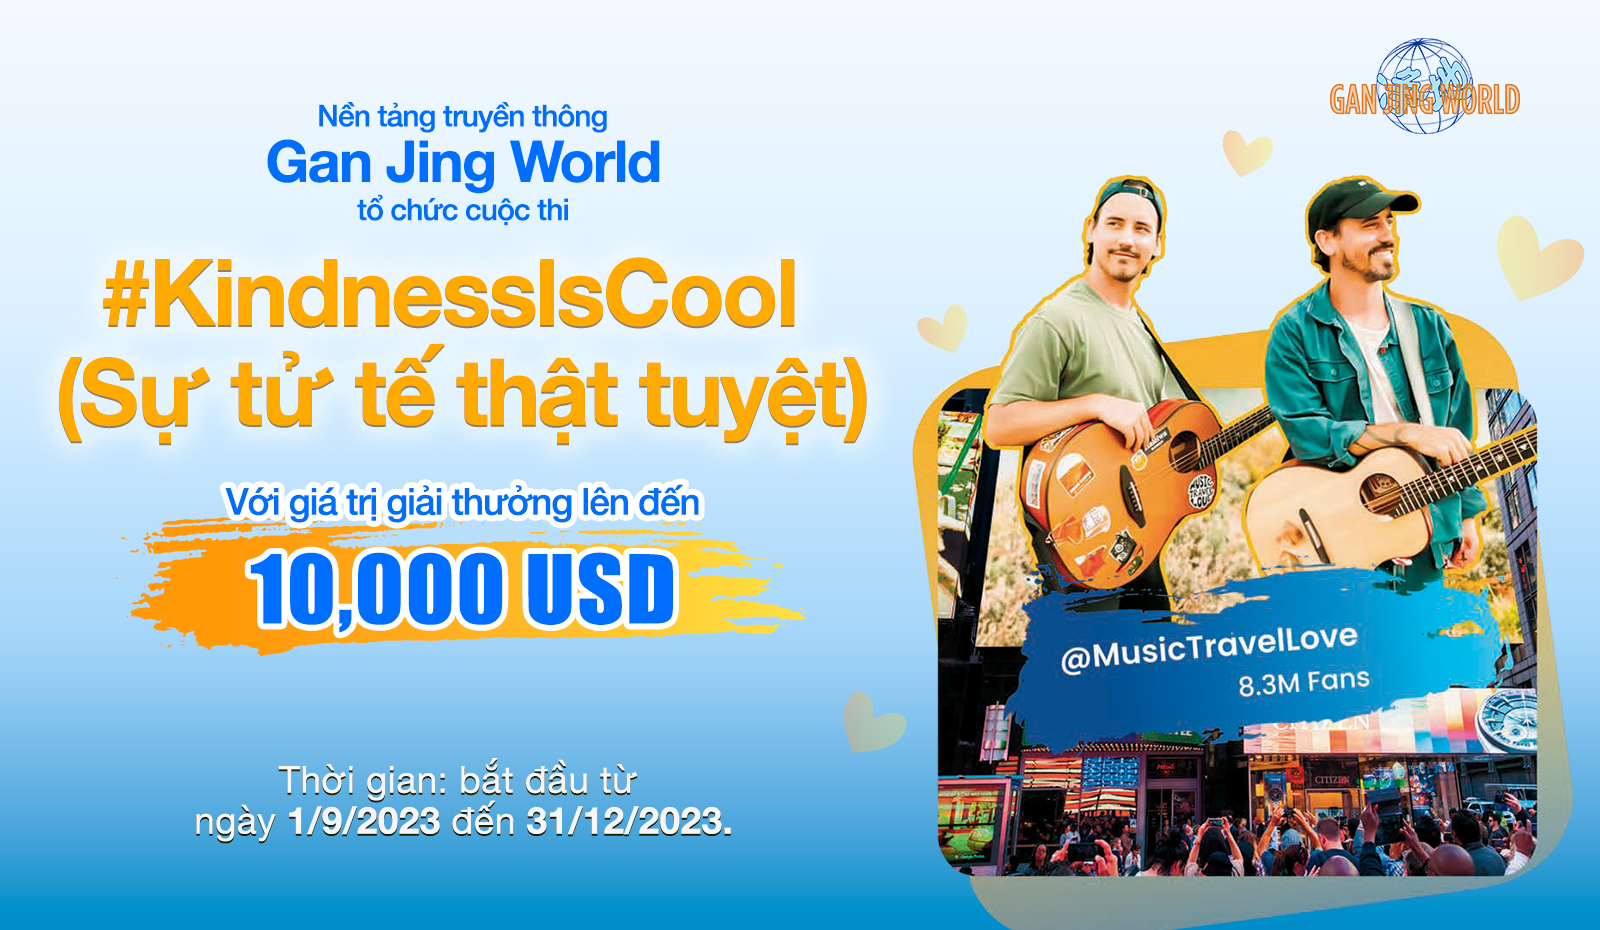 Cuộc thi ‘KindnessIsCool’ của Gan Jing World được khai triển trên toàn cầu